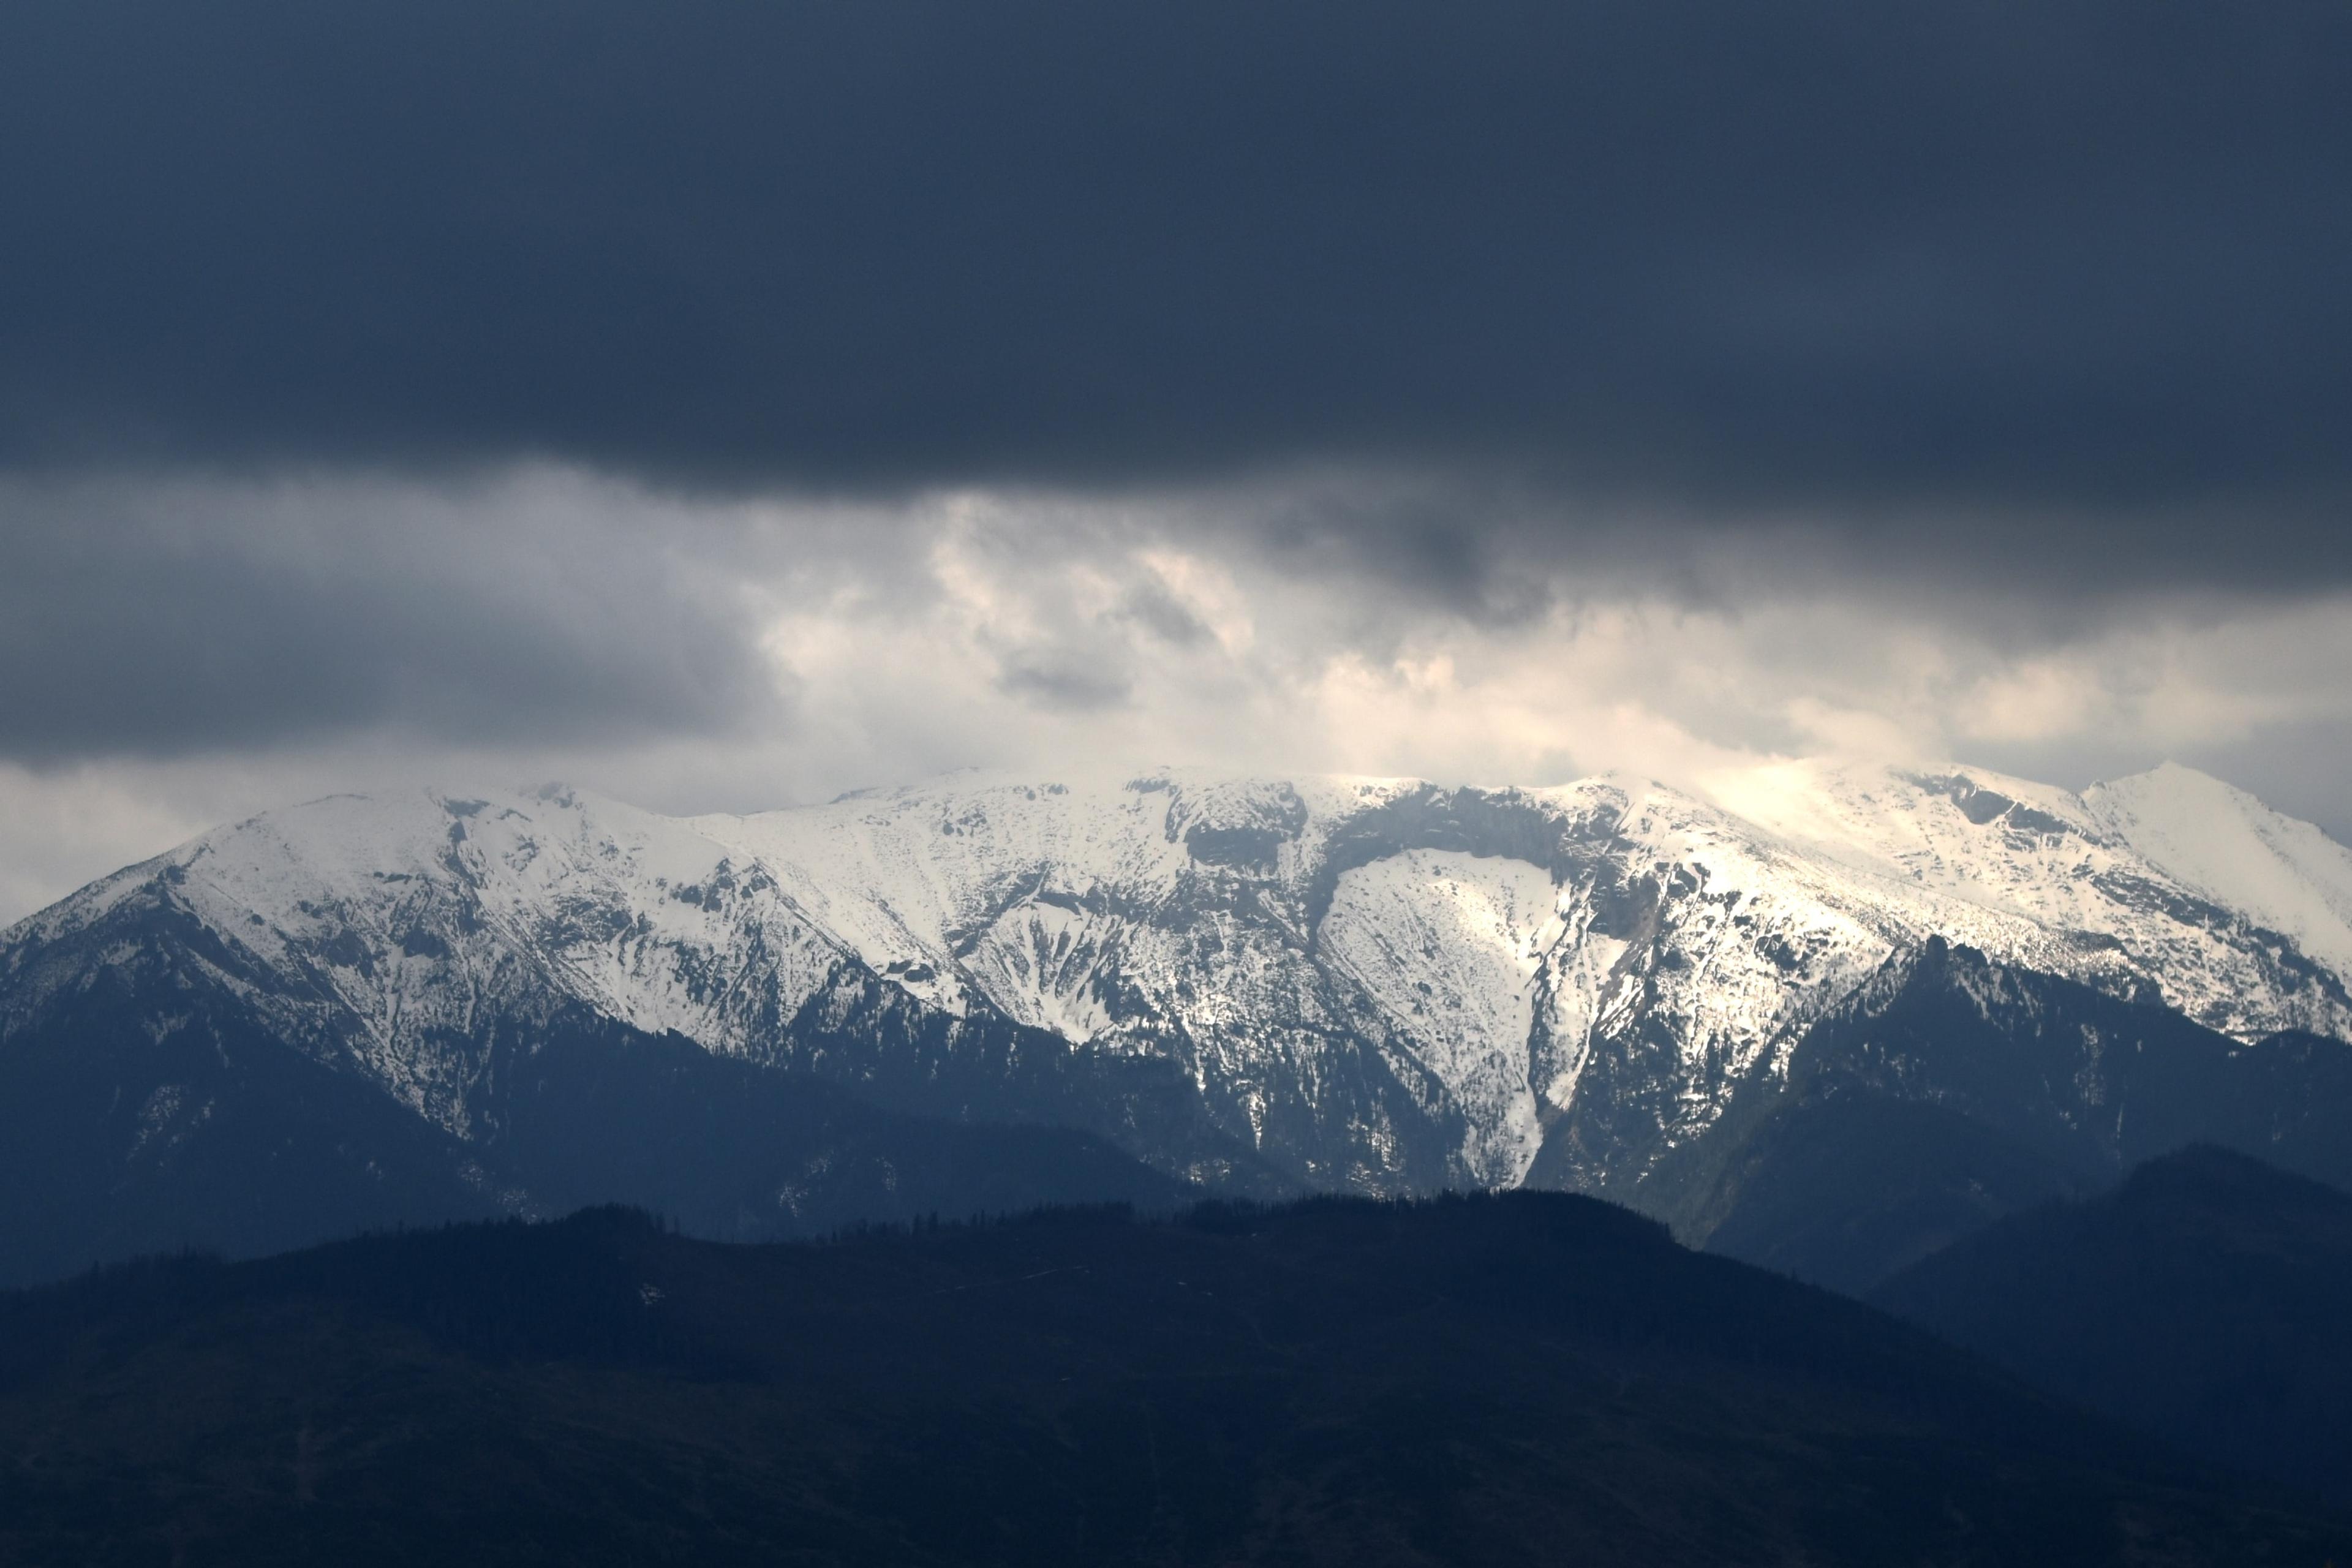 Tatra Mountains seen from Bachledova, Slovakia